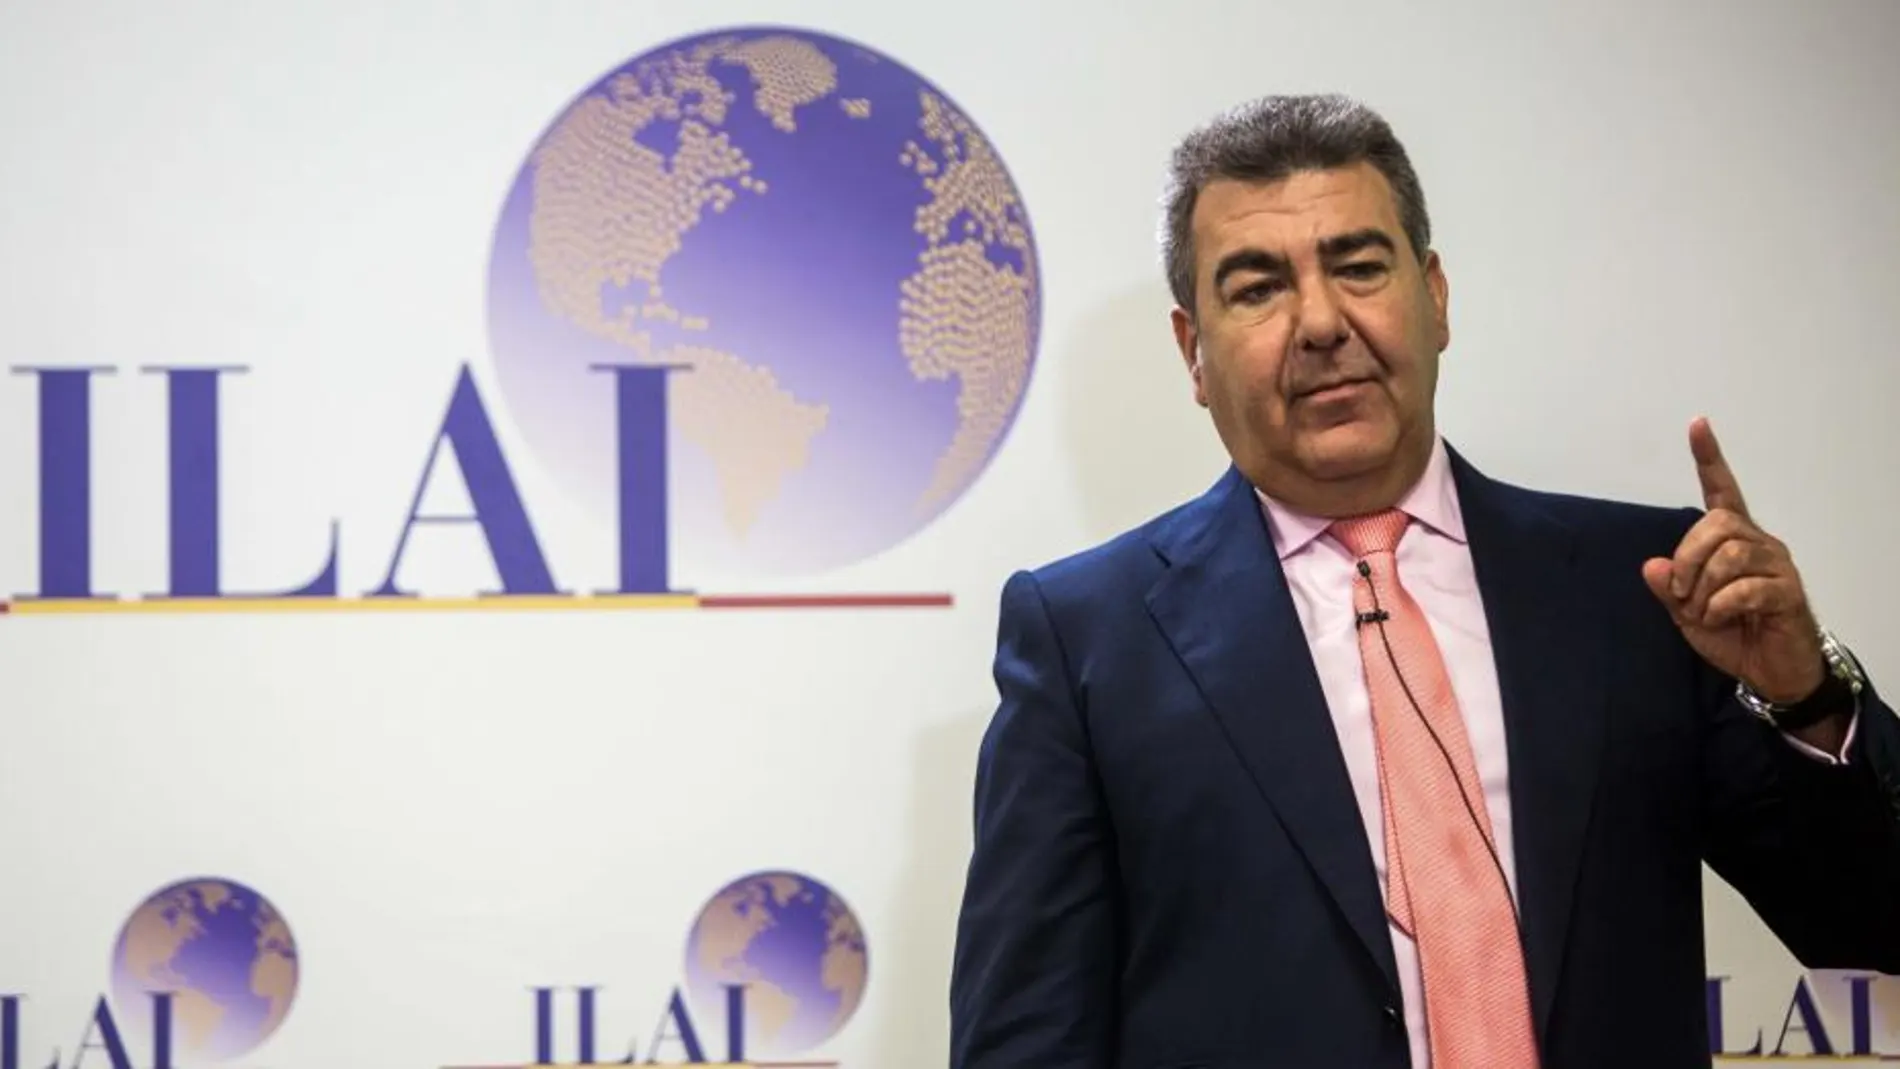 El presidente de Air Nostrum, Carlos Bertomeu, presentó el plan director 2018-2020 de la sociedad ILAI